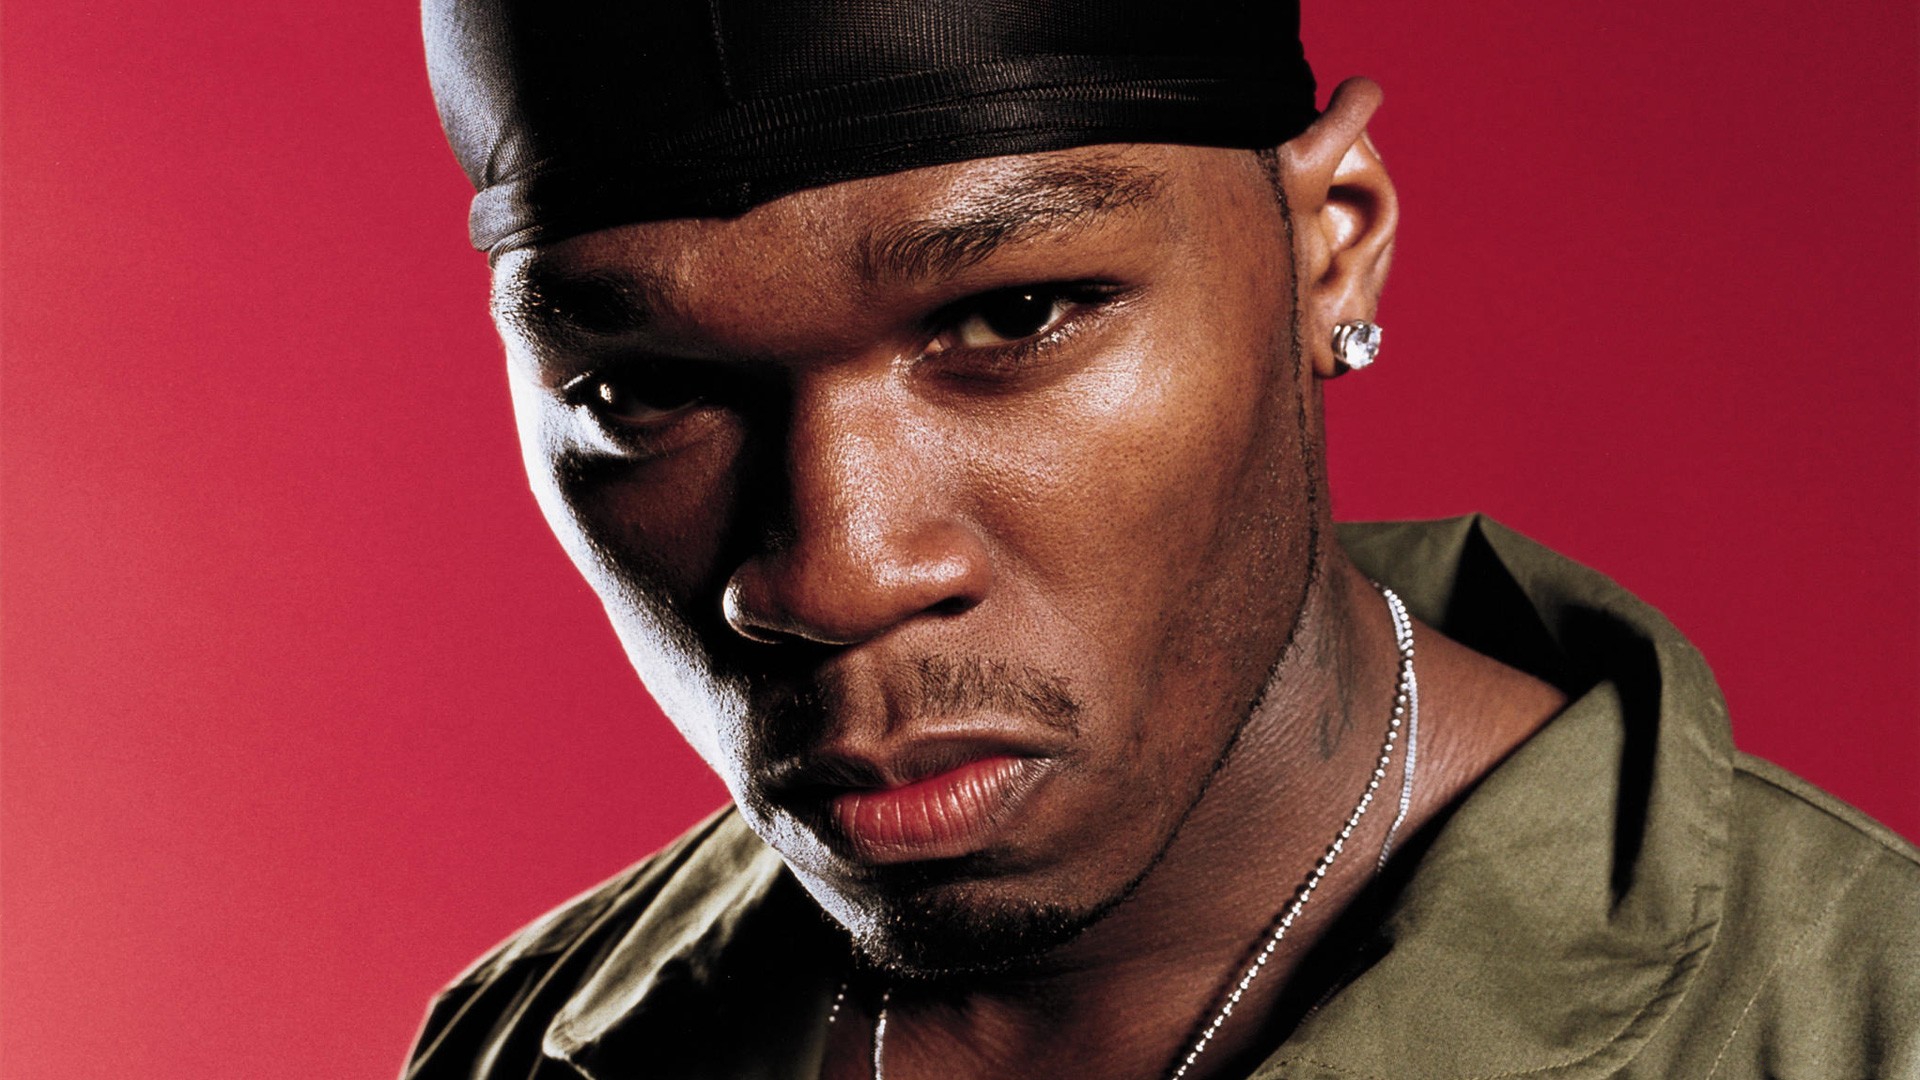 Песни лучшего рэпера. Рэпер 50 Cent. 50 Цент рэпер. Дюраг 50 Cent. 50 Сент Кертис.